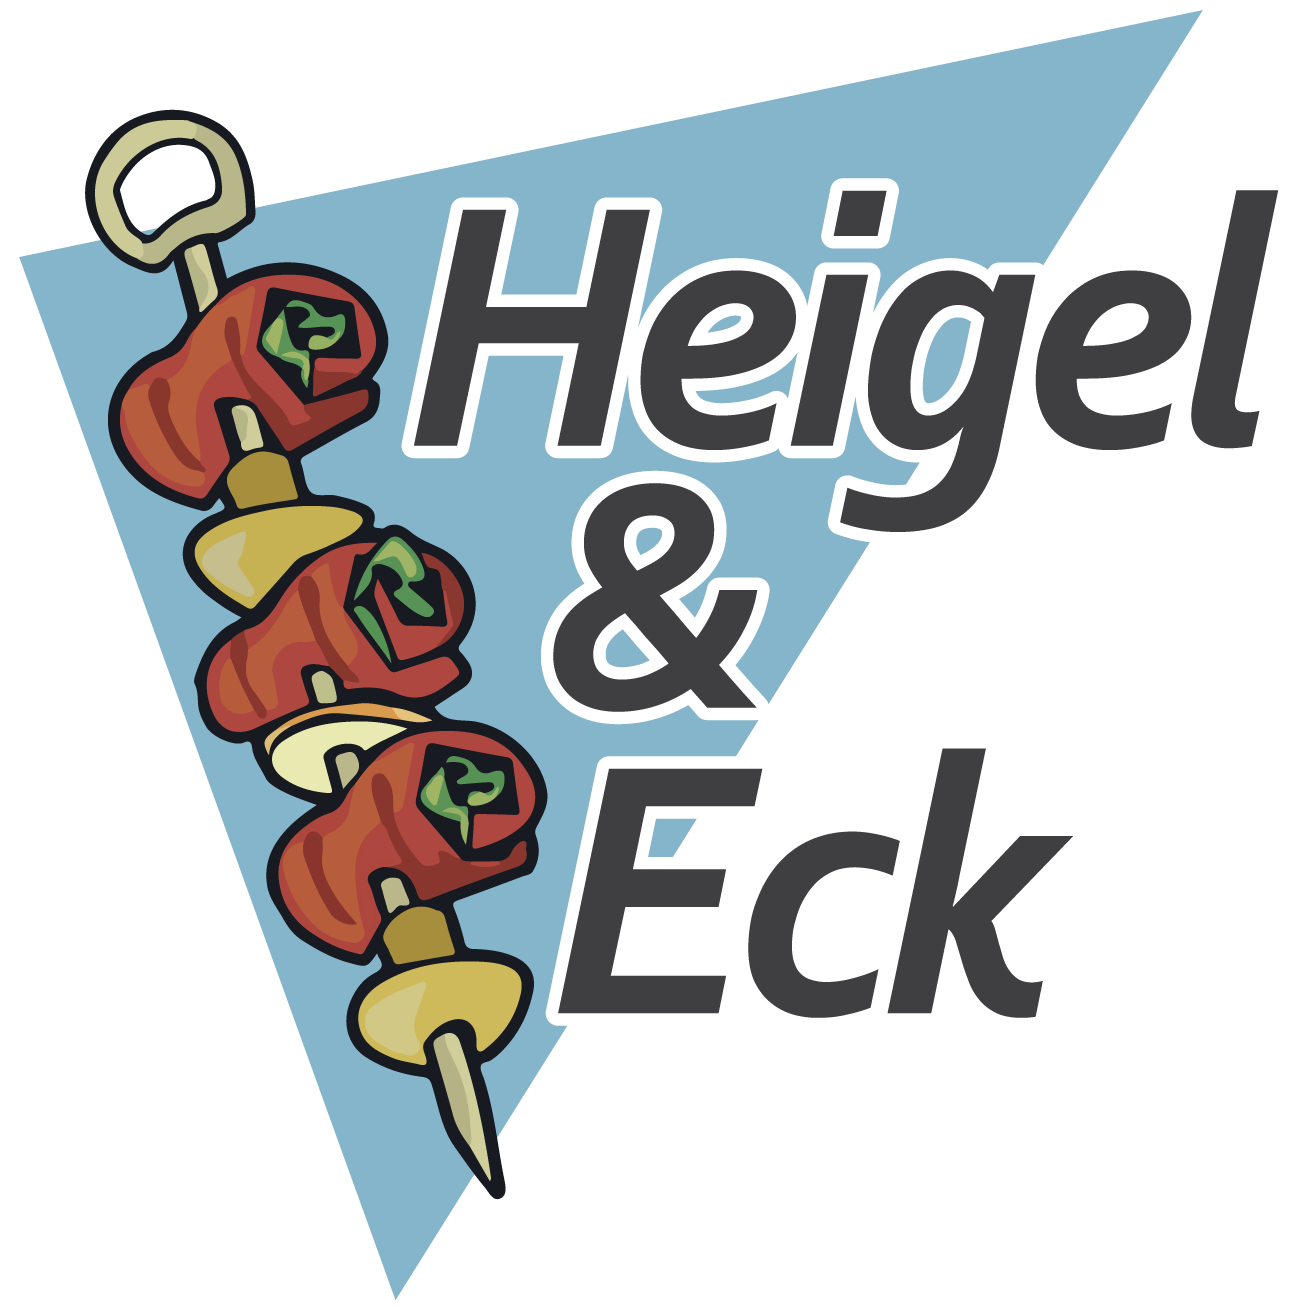 Metzgerei Heigel-Eck